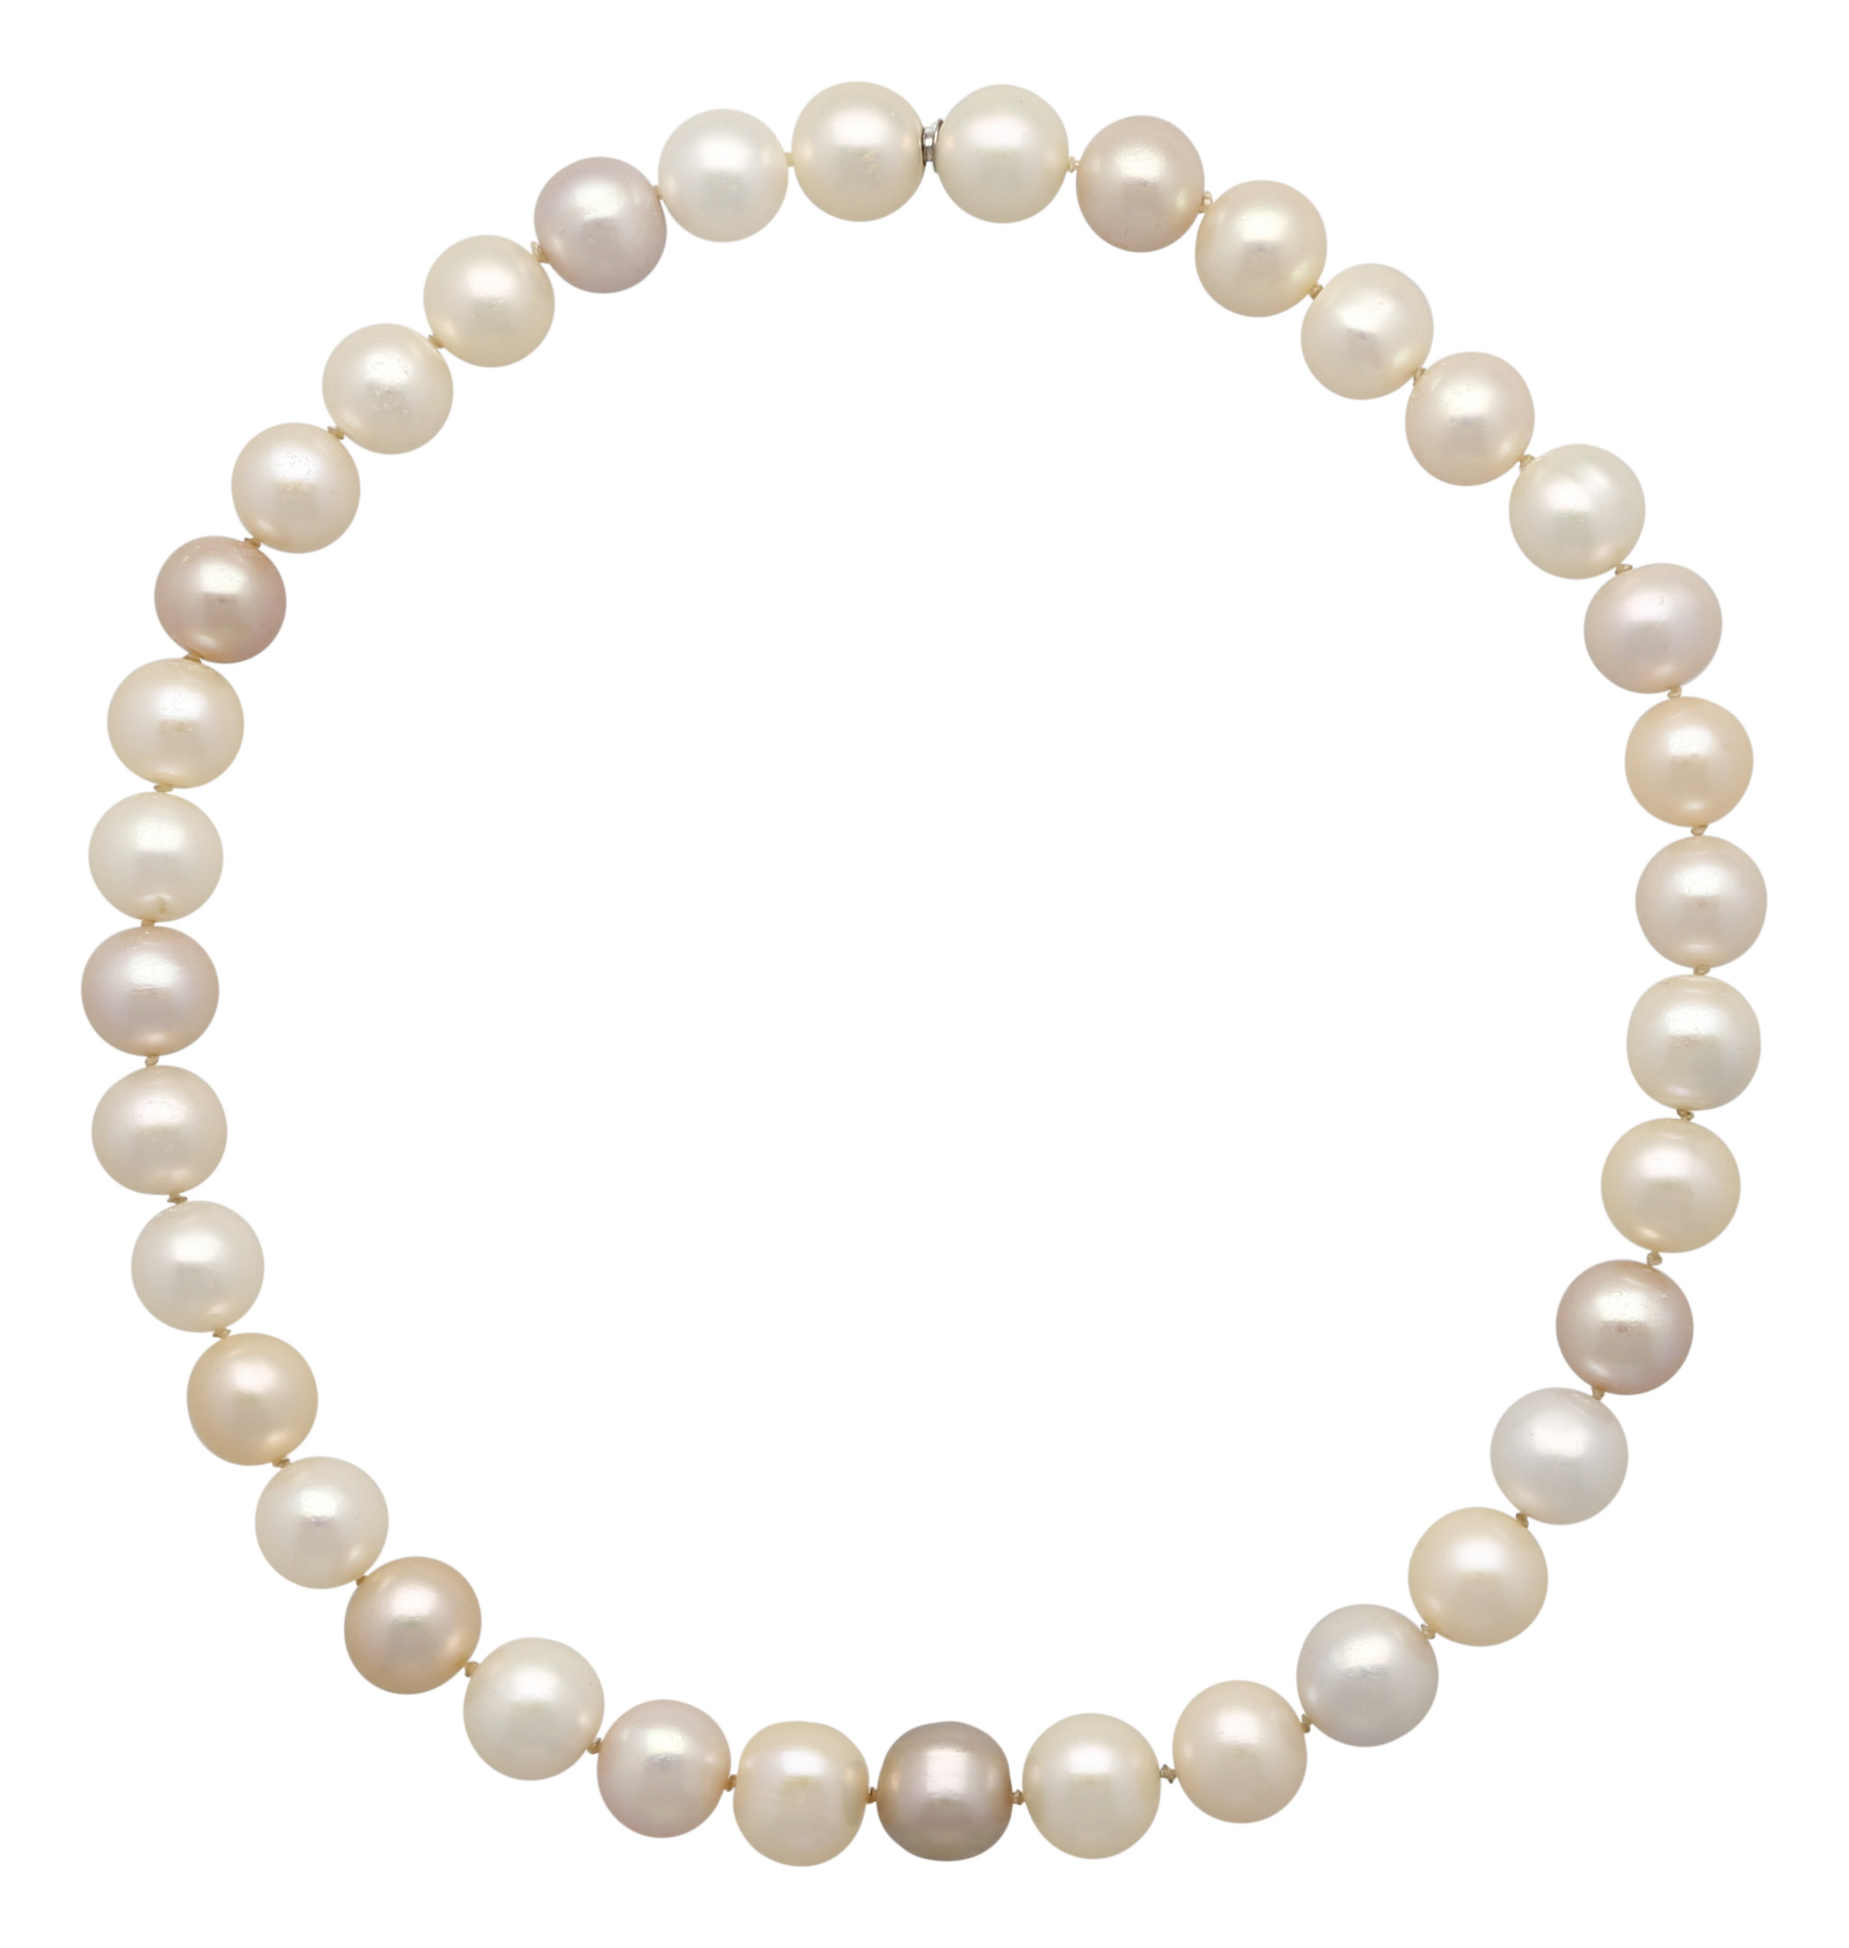 Süsswasser-Zuchtperlen-Set Schöne Perlen Kombination in Weissgold 18K. Feine Selektion aus